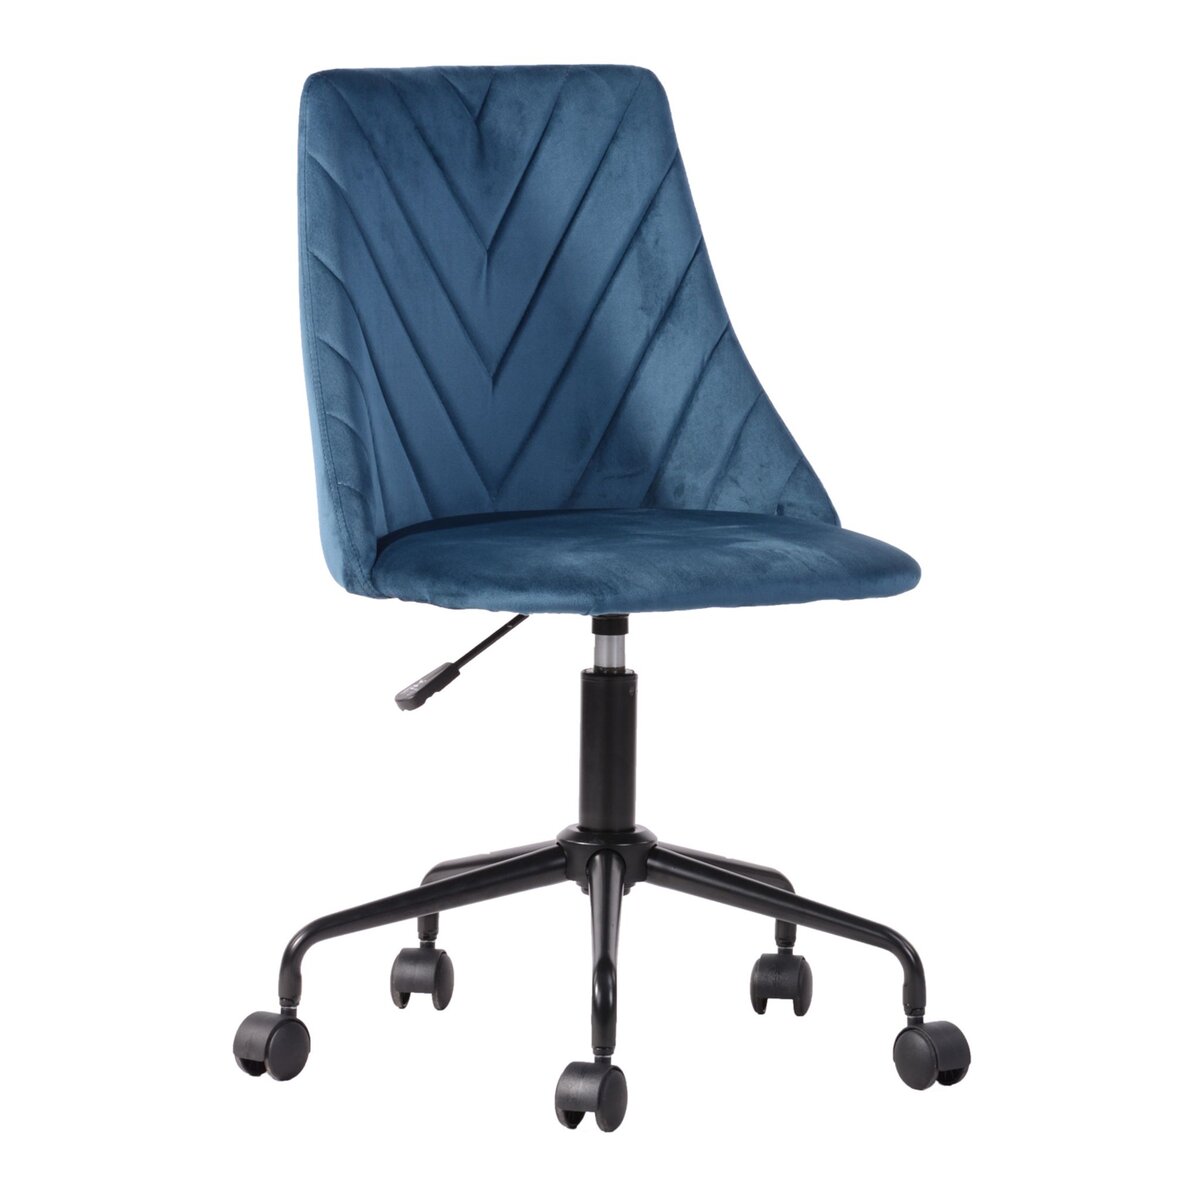  Chaise de bureau en velours bleu, réglable en hauteur, pivotant à 360°, toutes roues, 50*55*82-92cm